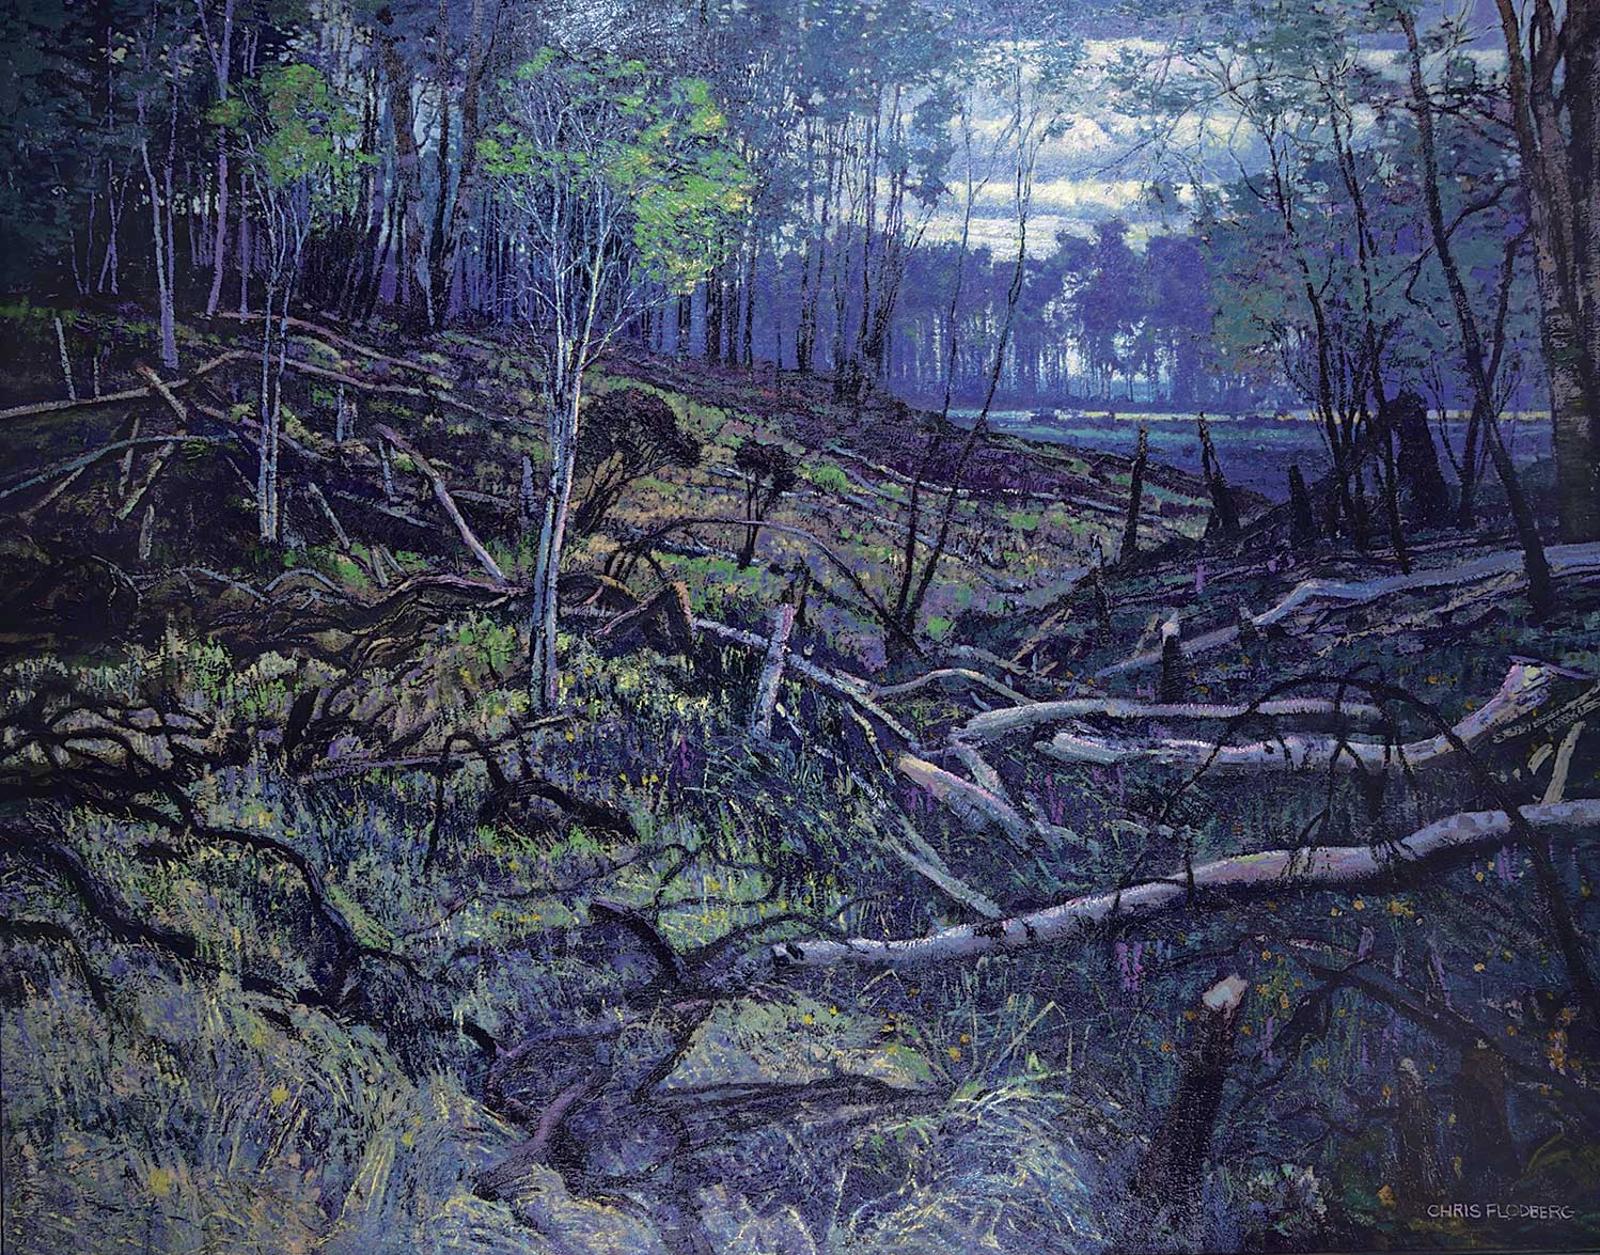 Chris S. Flodberg - Burnt Landscape